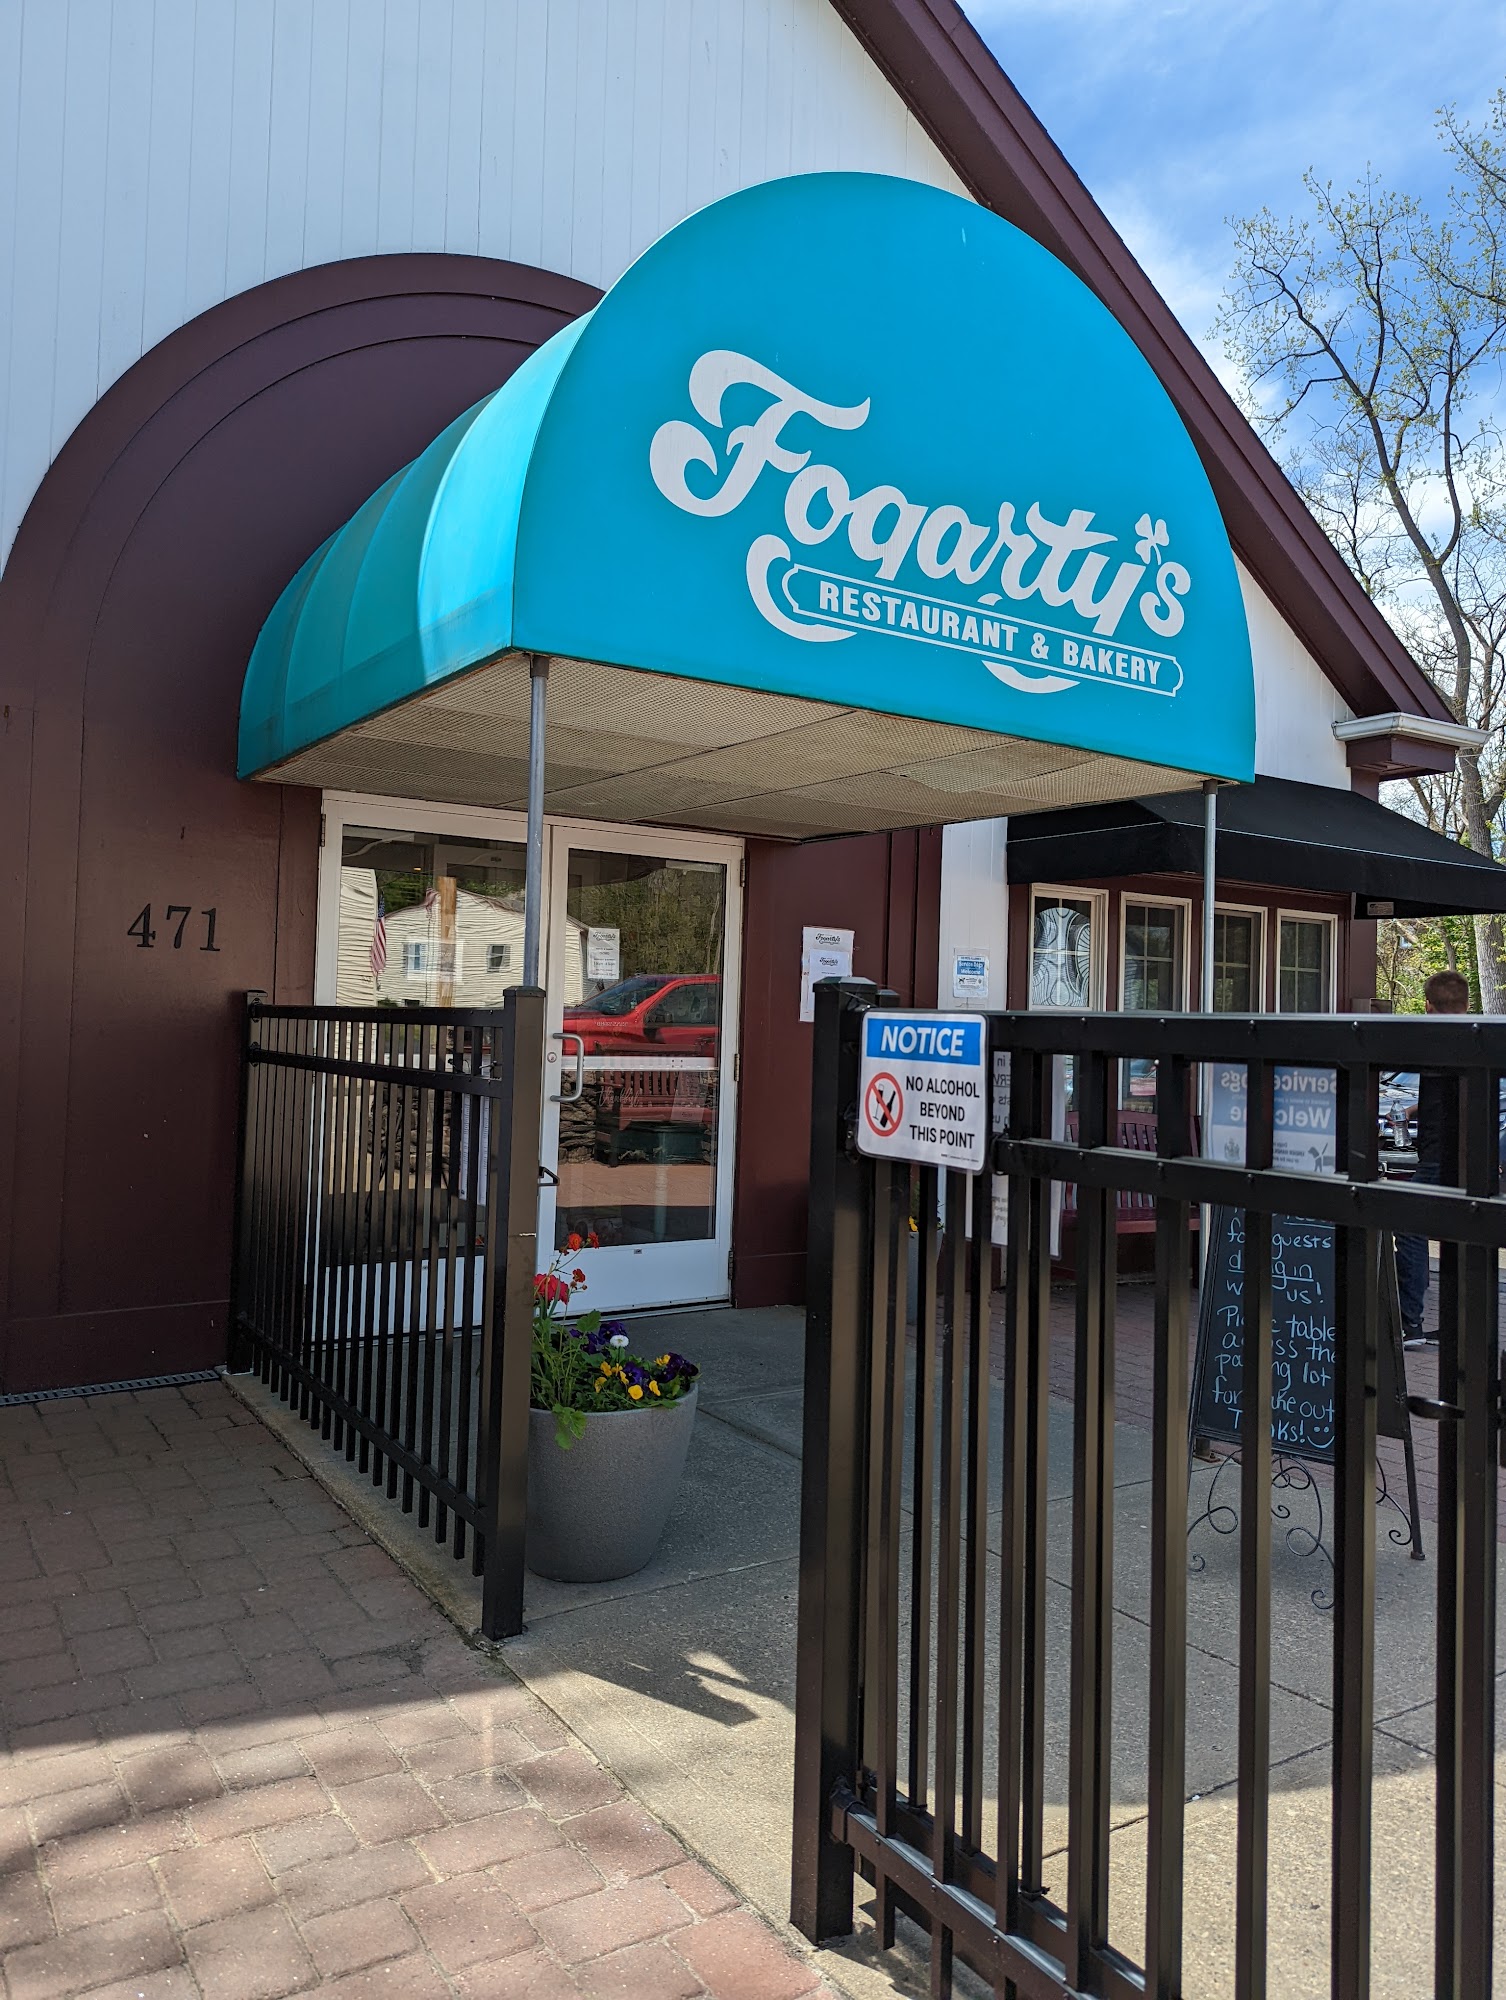 Fogarty's Restaurant & Bakery